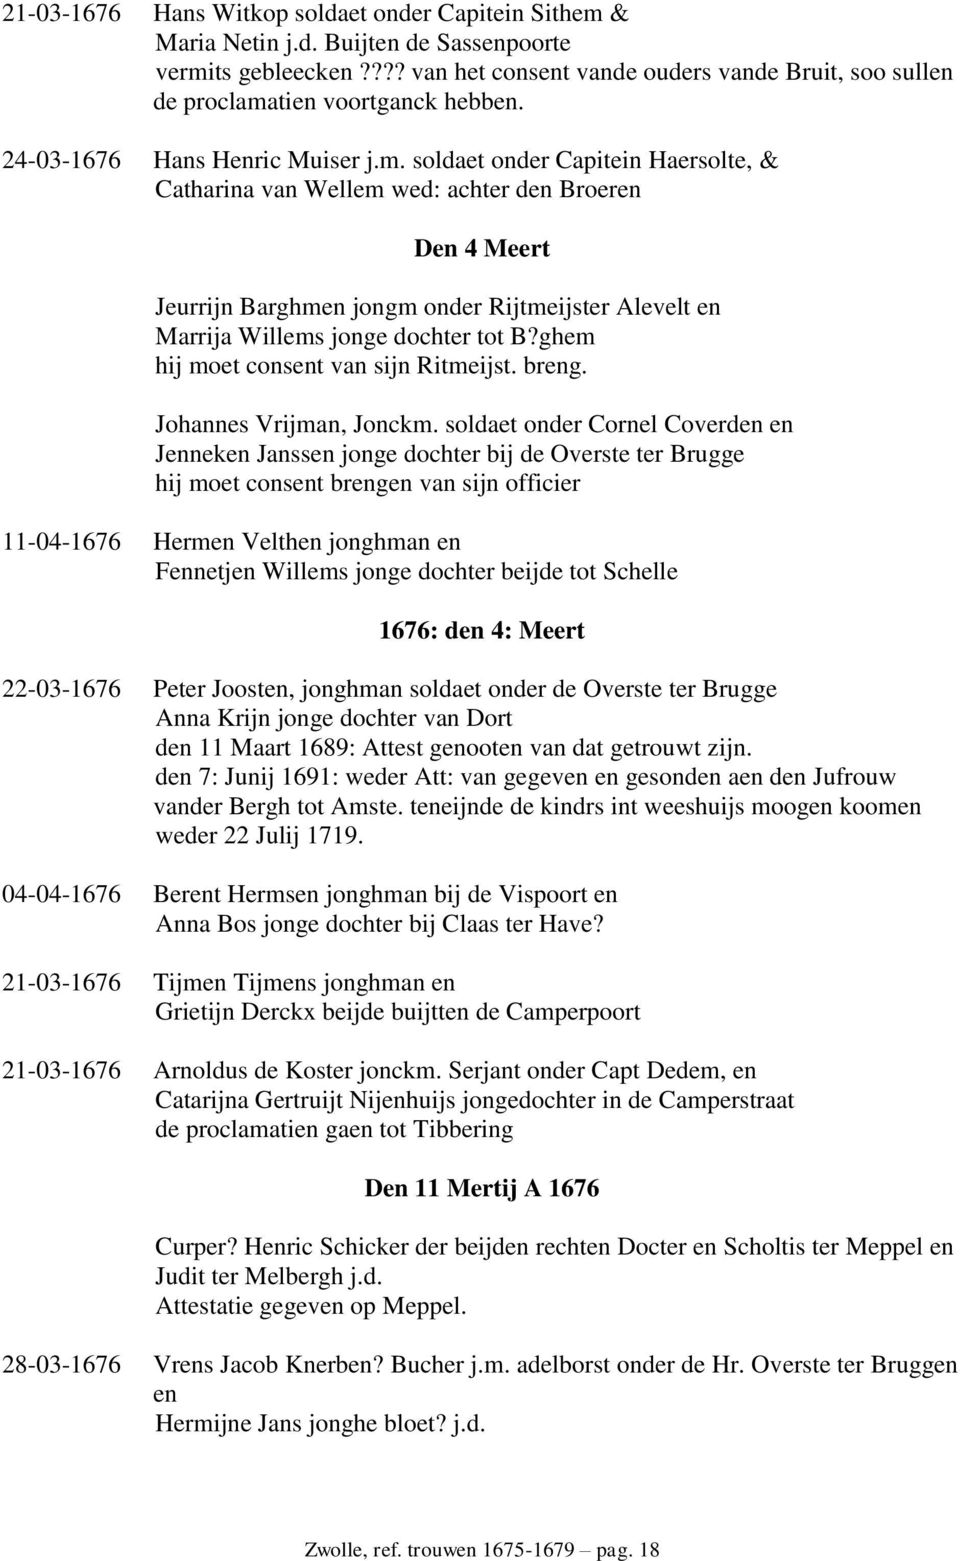 tien voortganck hebben. 24-03-1676 Hans Henric Muiser j.m.